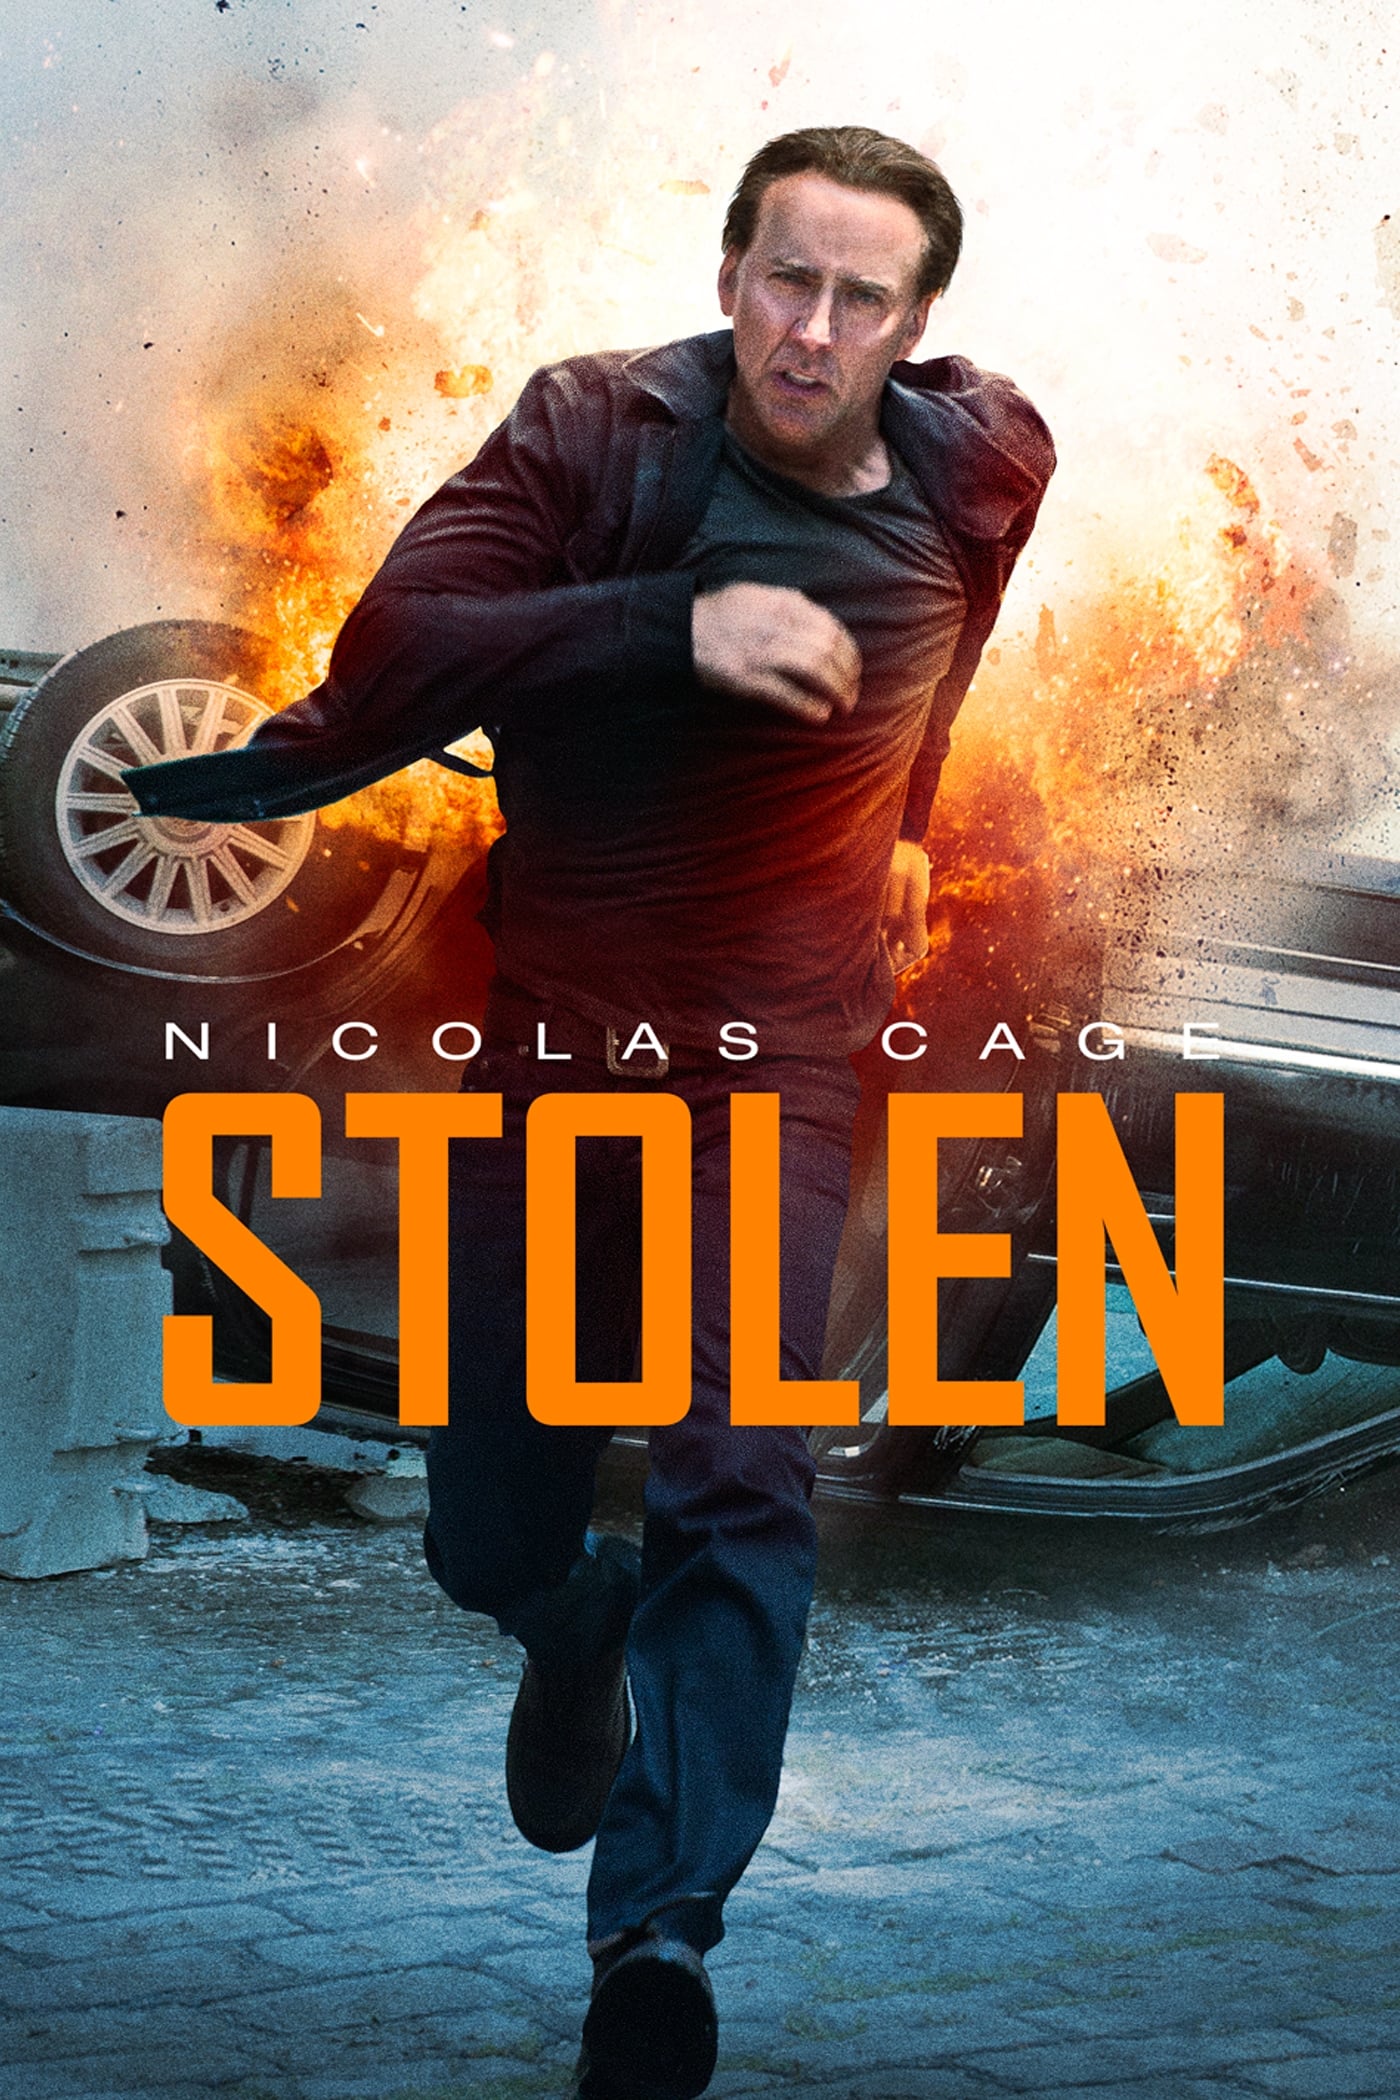 Stolen [HD] (2012)